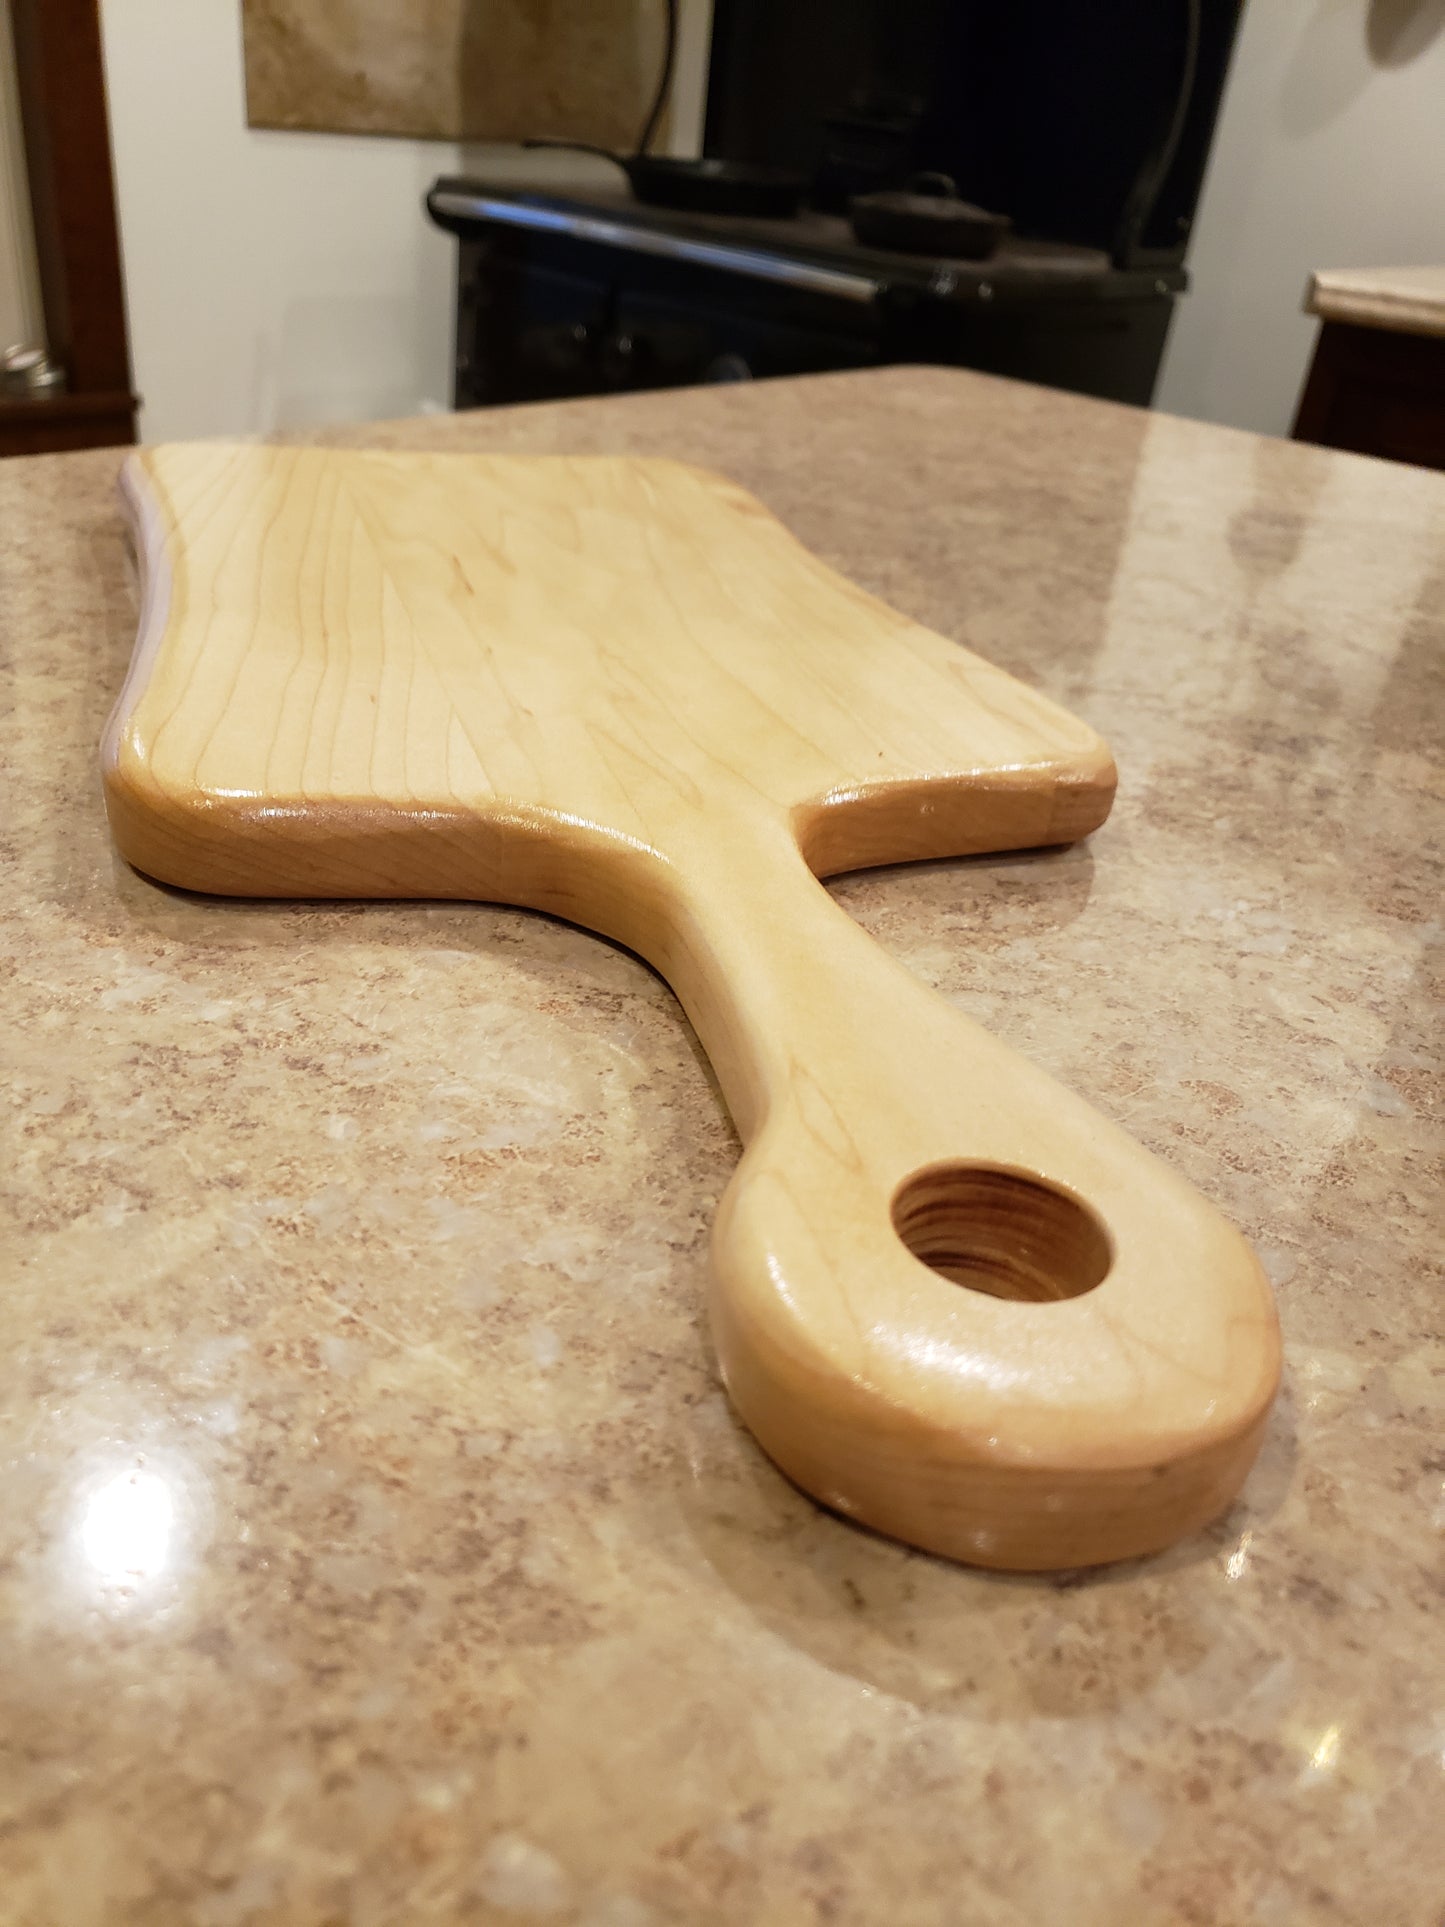 Cutting Board, Maple Unique Shape